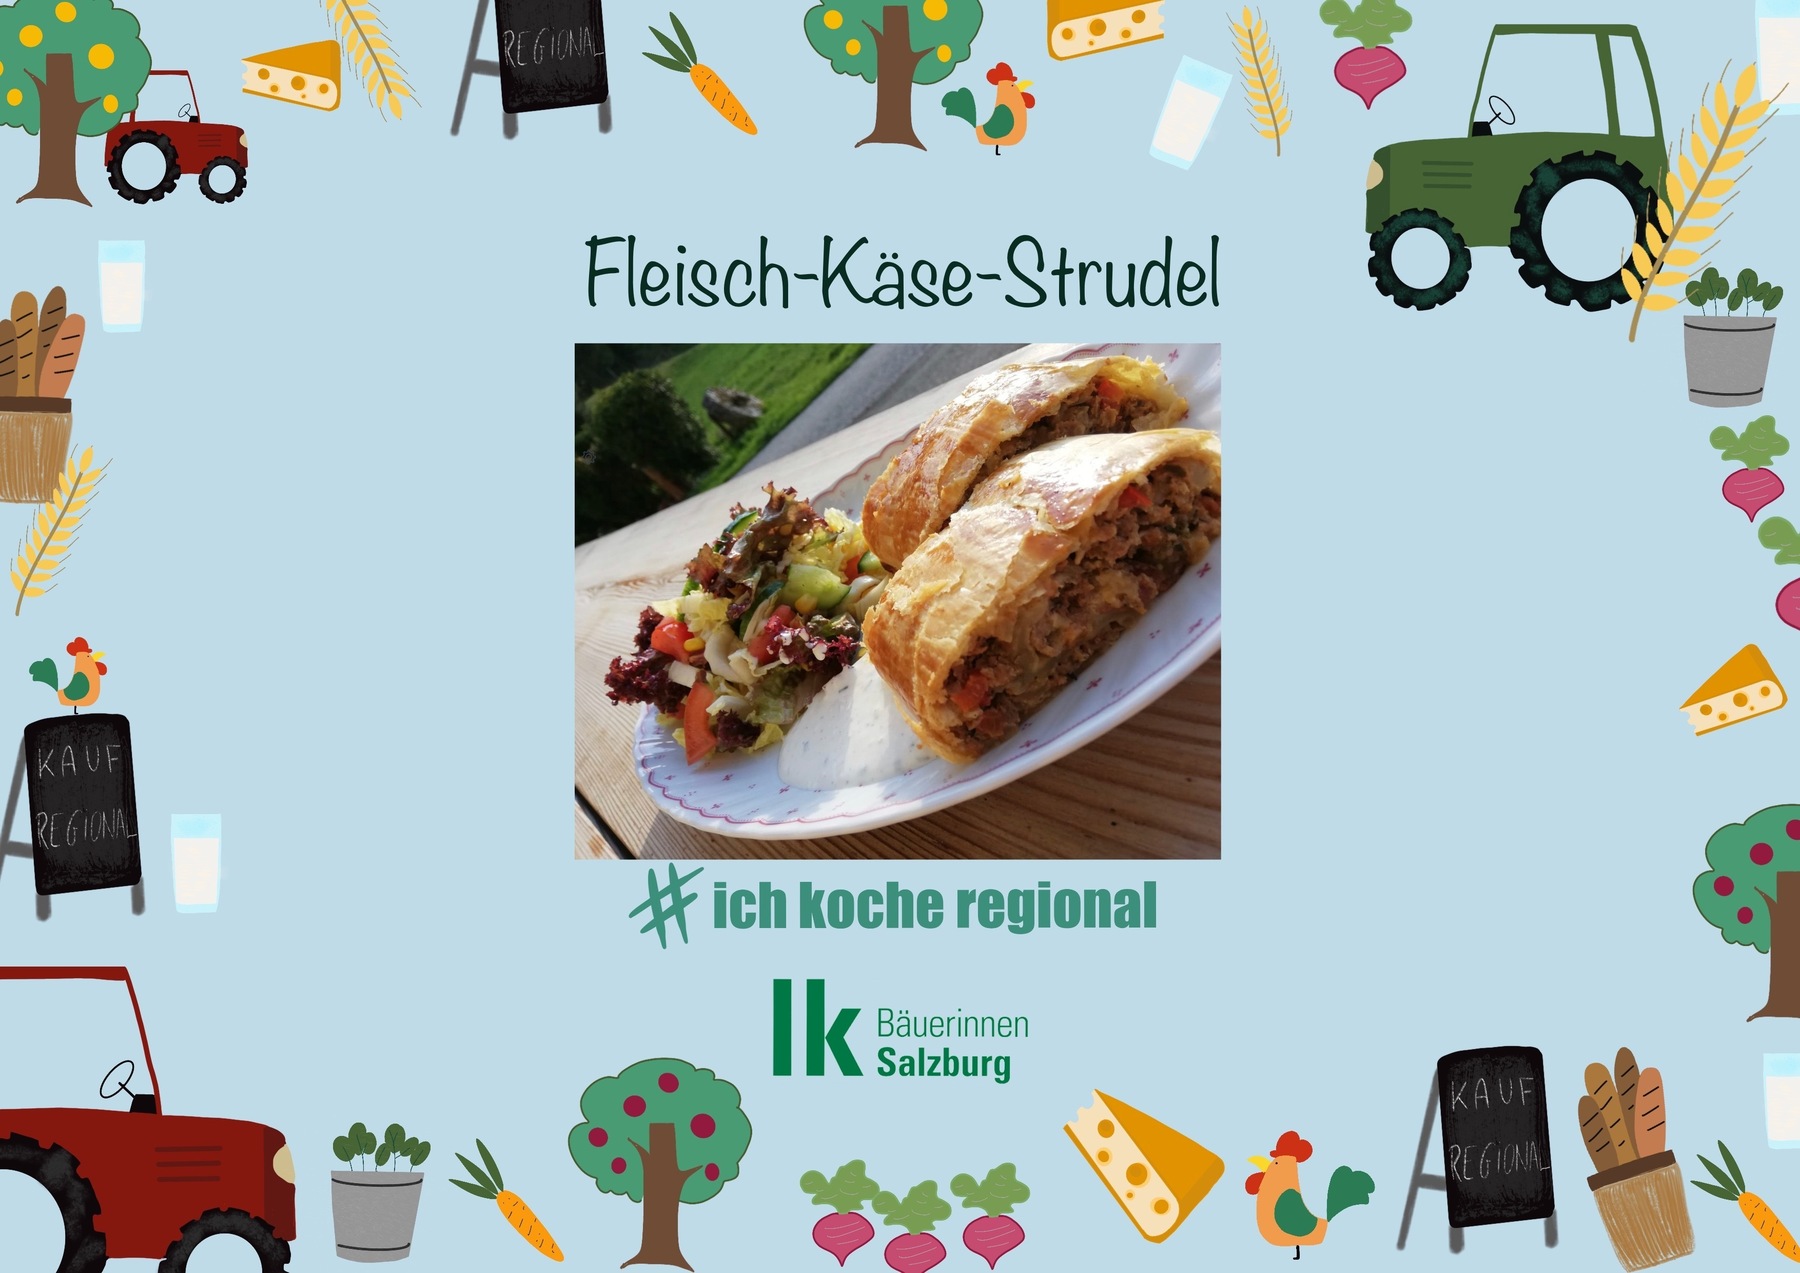 Fleisch-Käse-Strudel (1) © lk salzburg